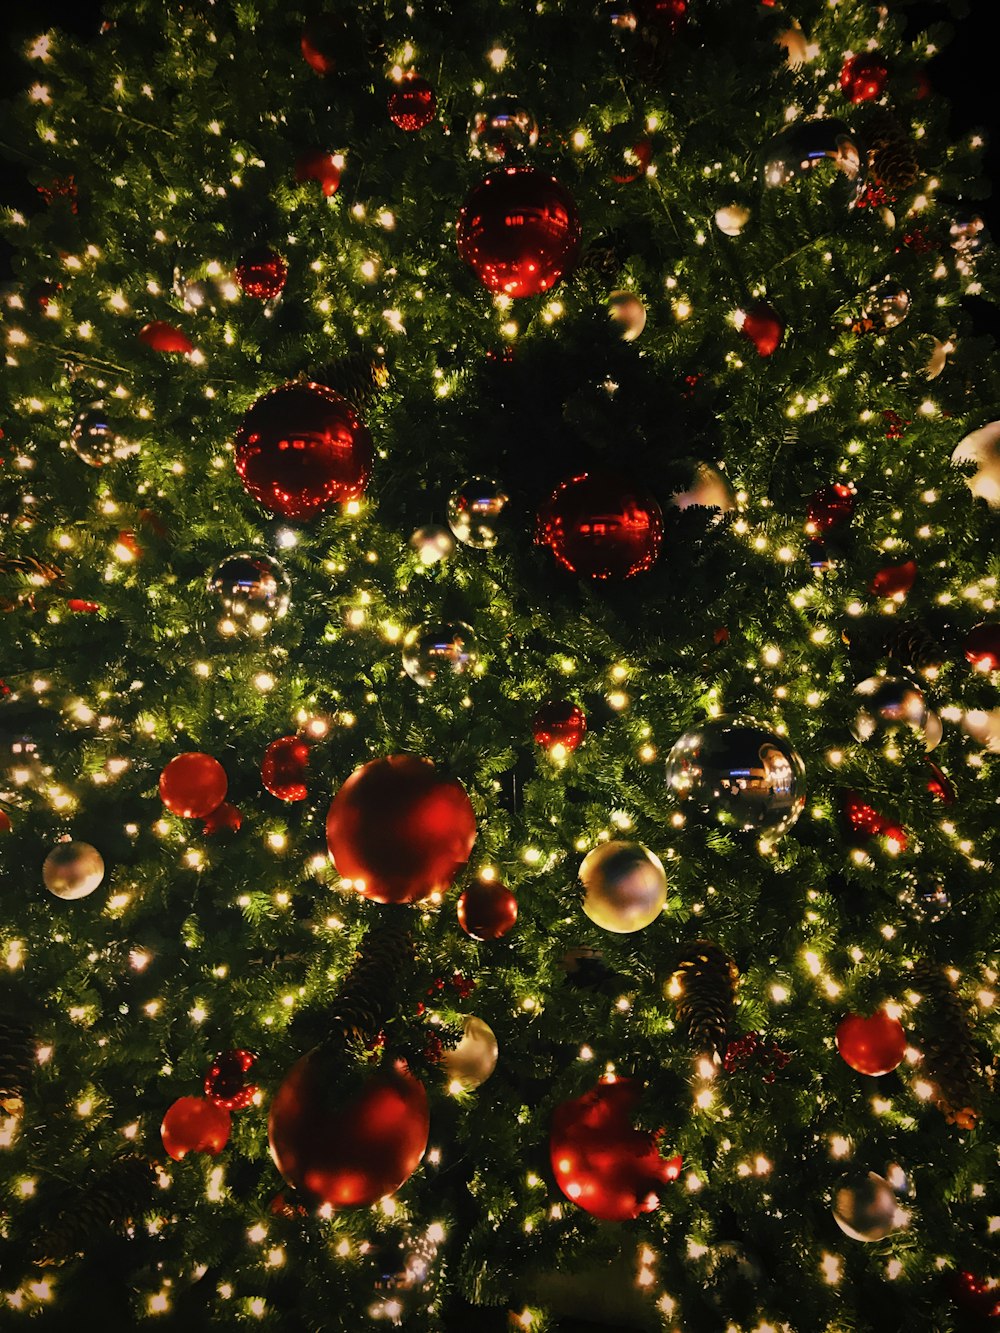 Guarda la fotografia dell'albero di Natale con palline e luci a stringa illuminate